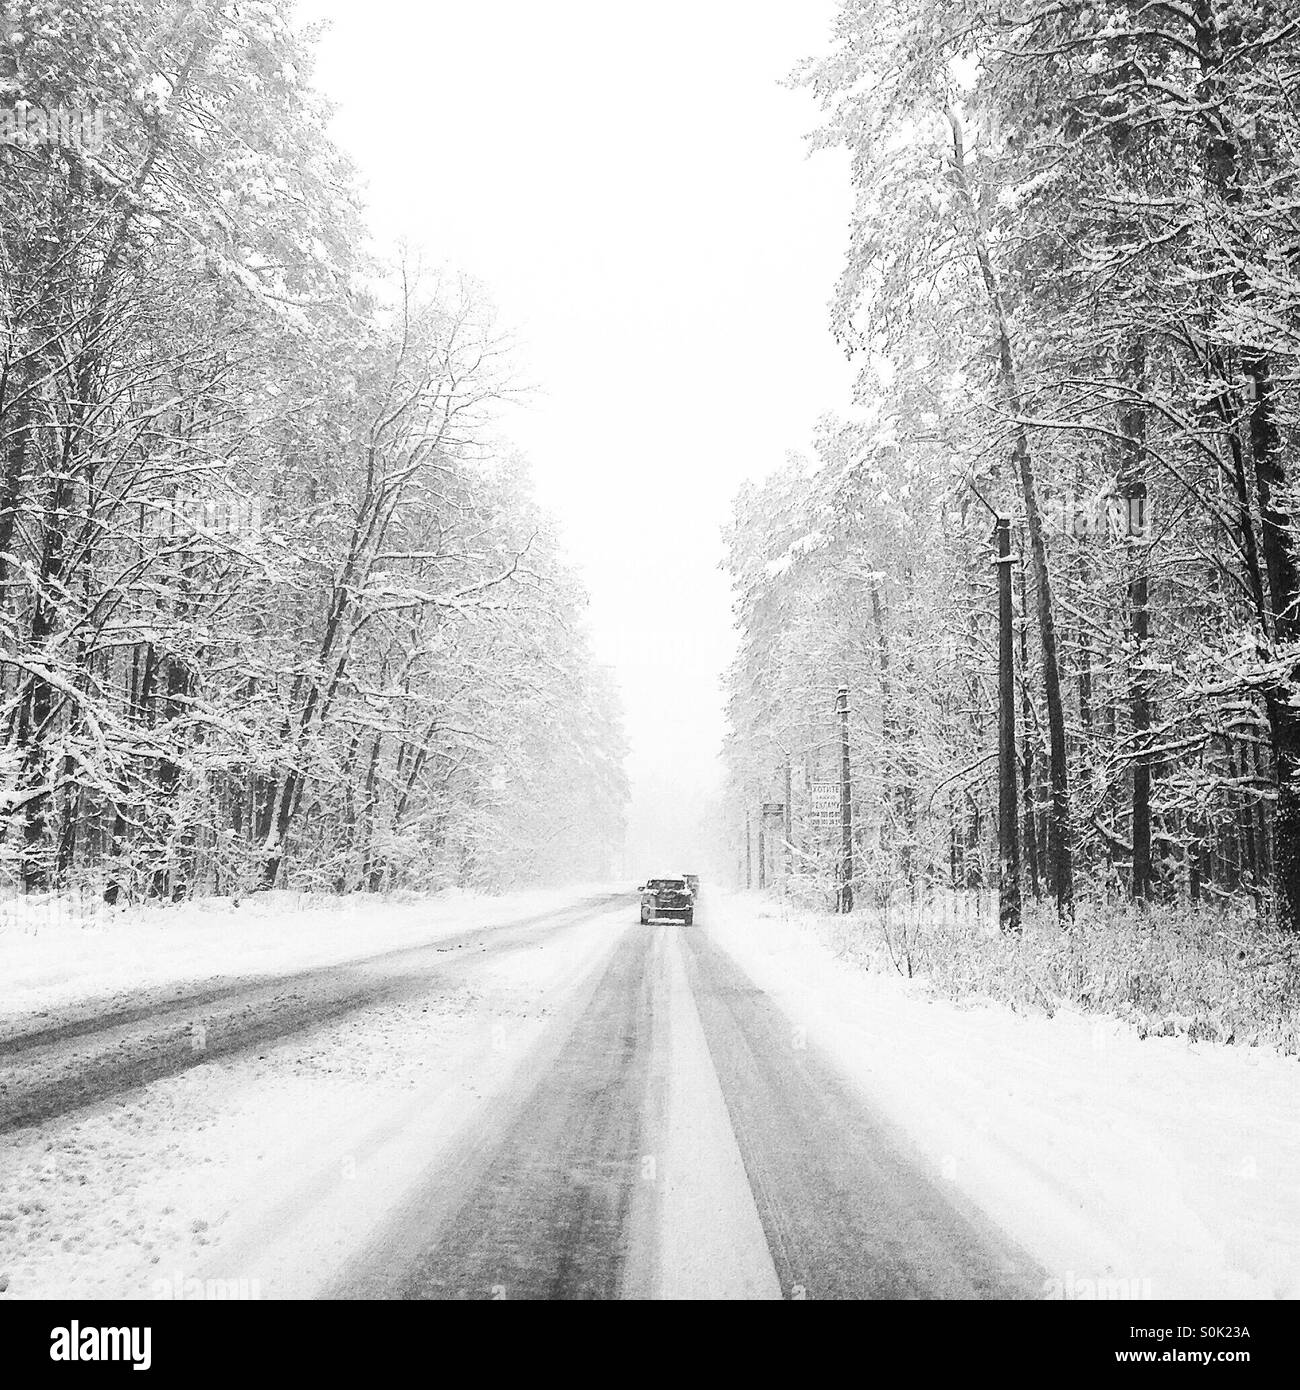 Voiture est sur la route de la neige et des arbres dans la neige Banque D'Images